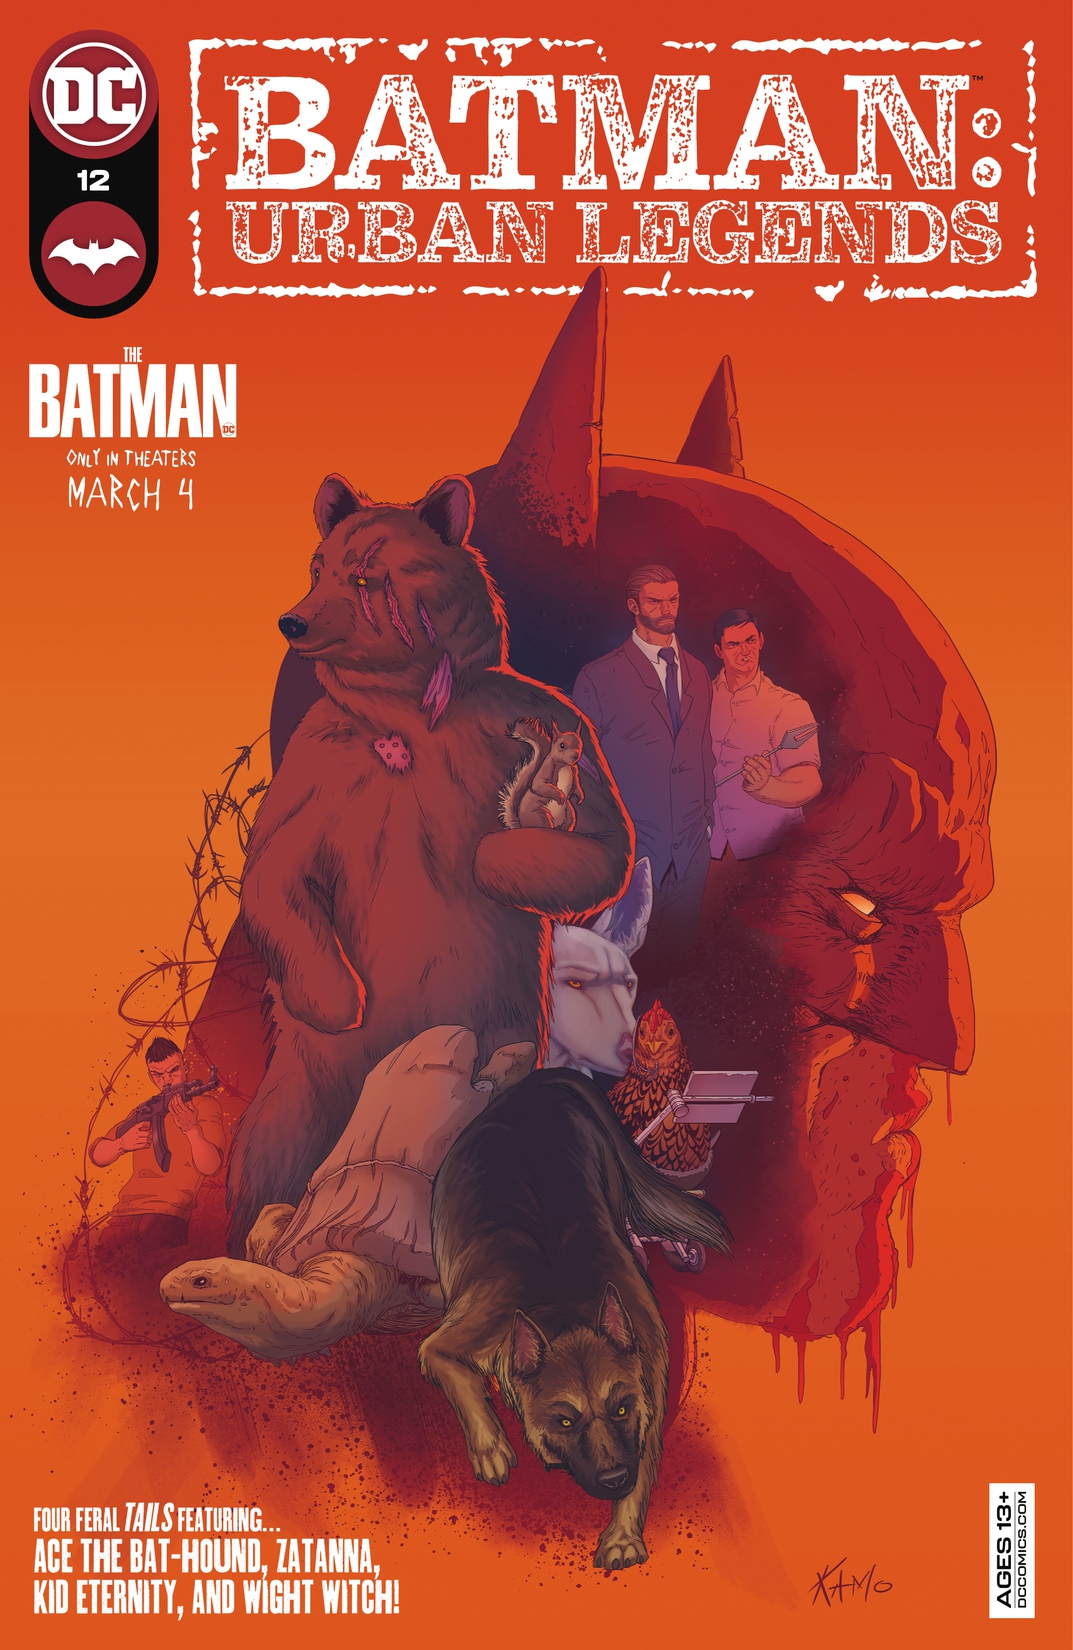 Batman: Urban Legends #12 preview images